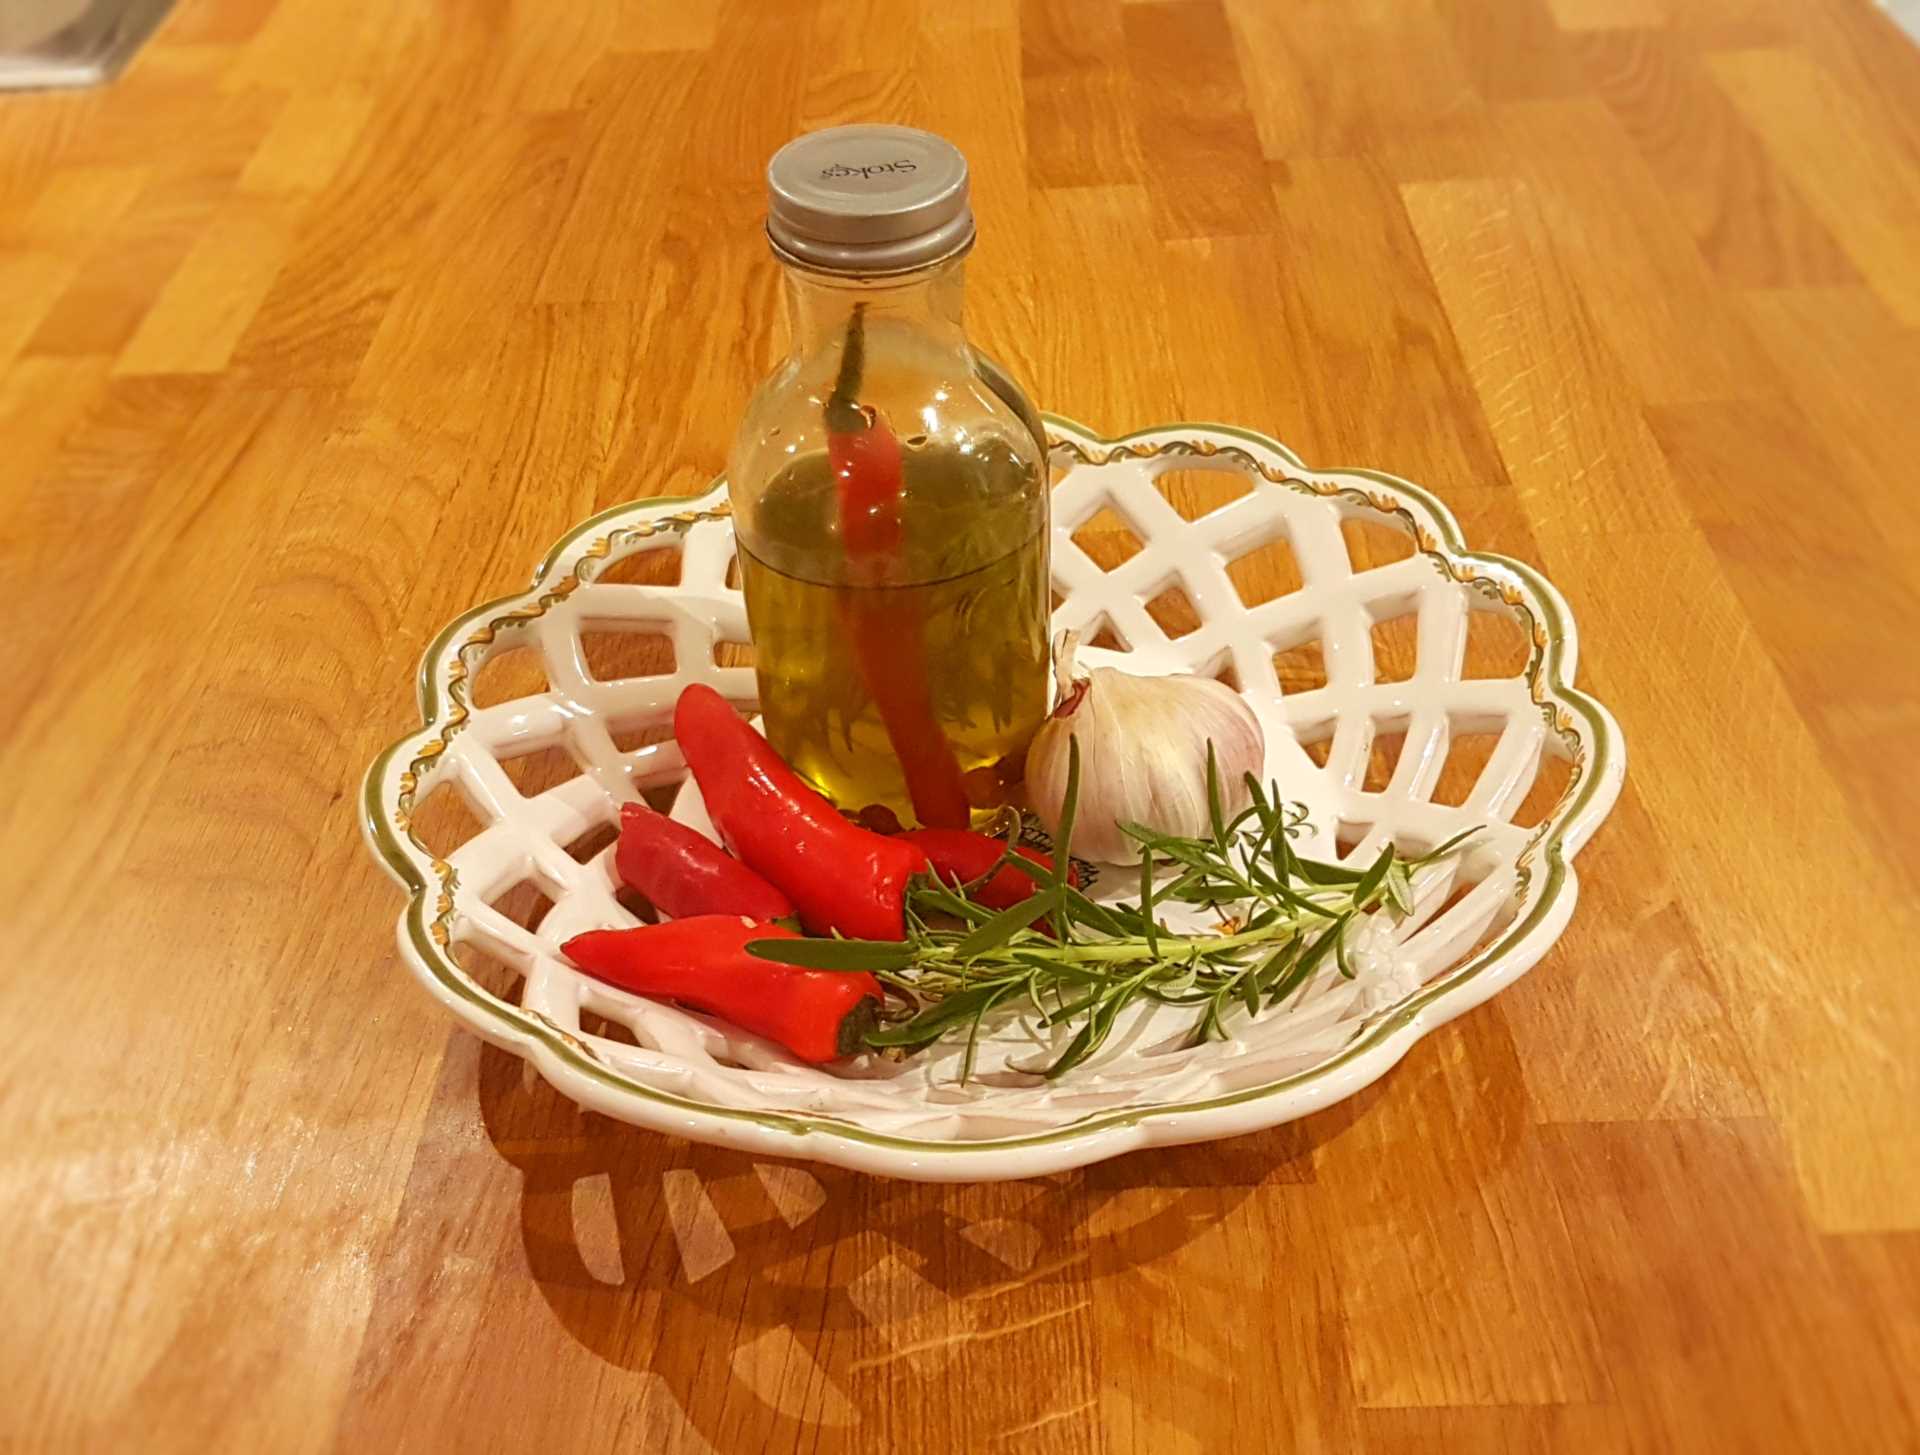 My homemade Chilli Oil recipe